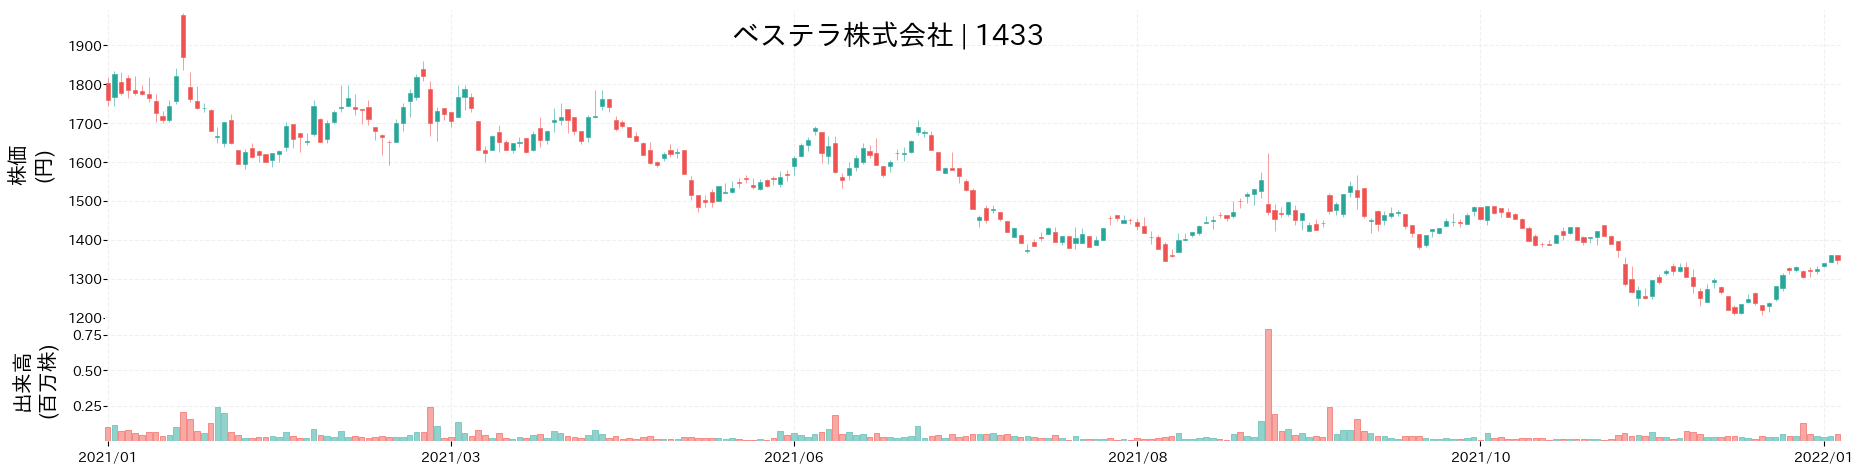 ベステラの株価推移(2021)